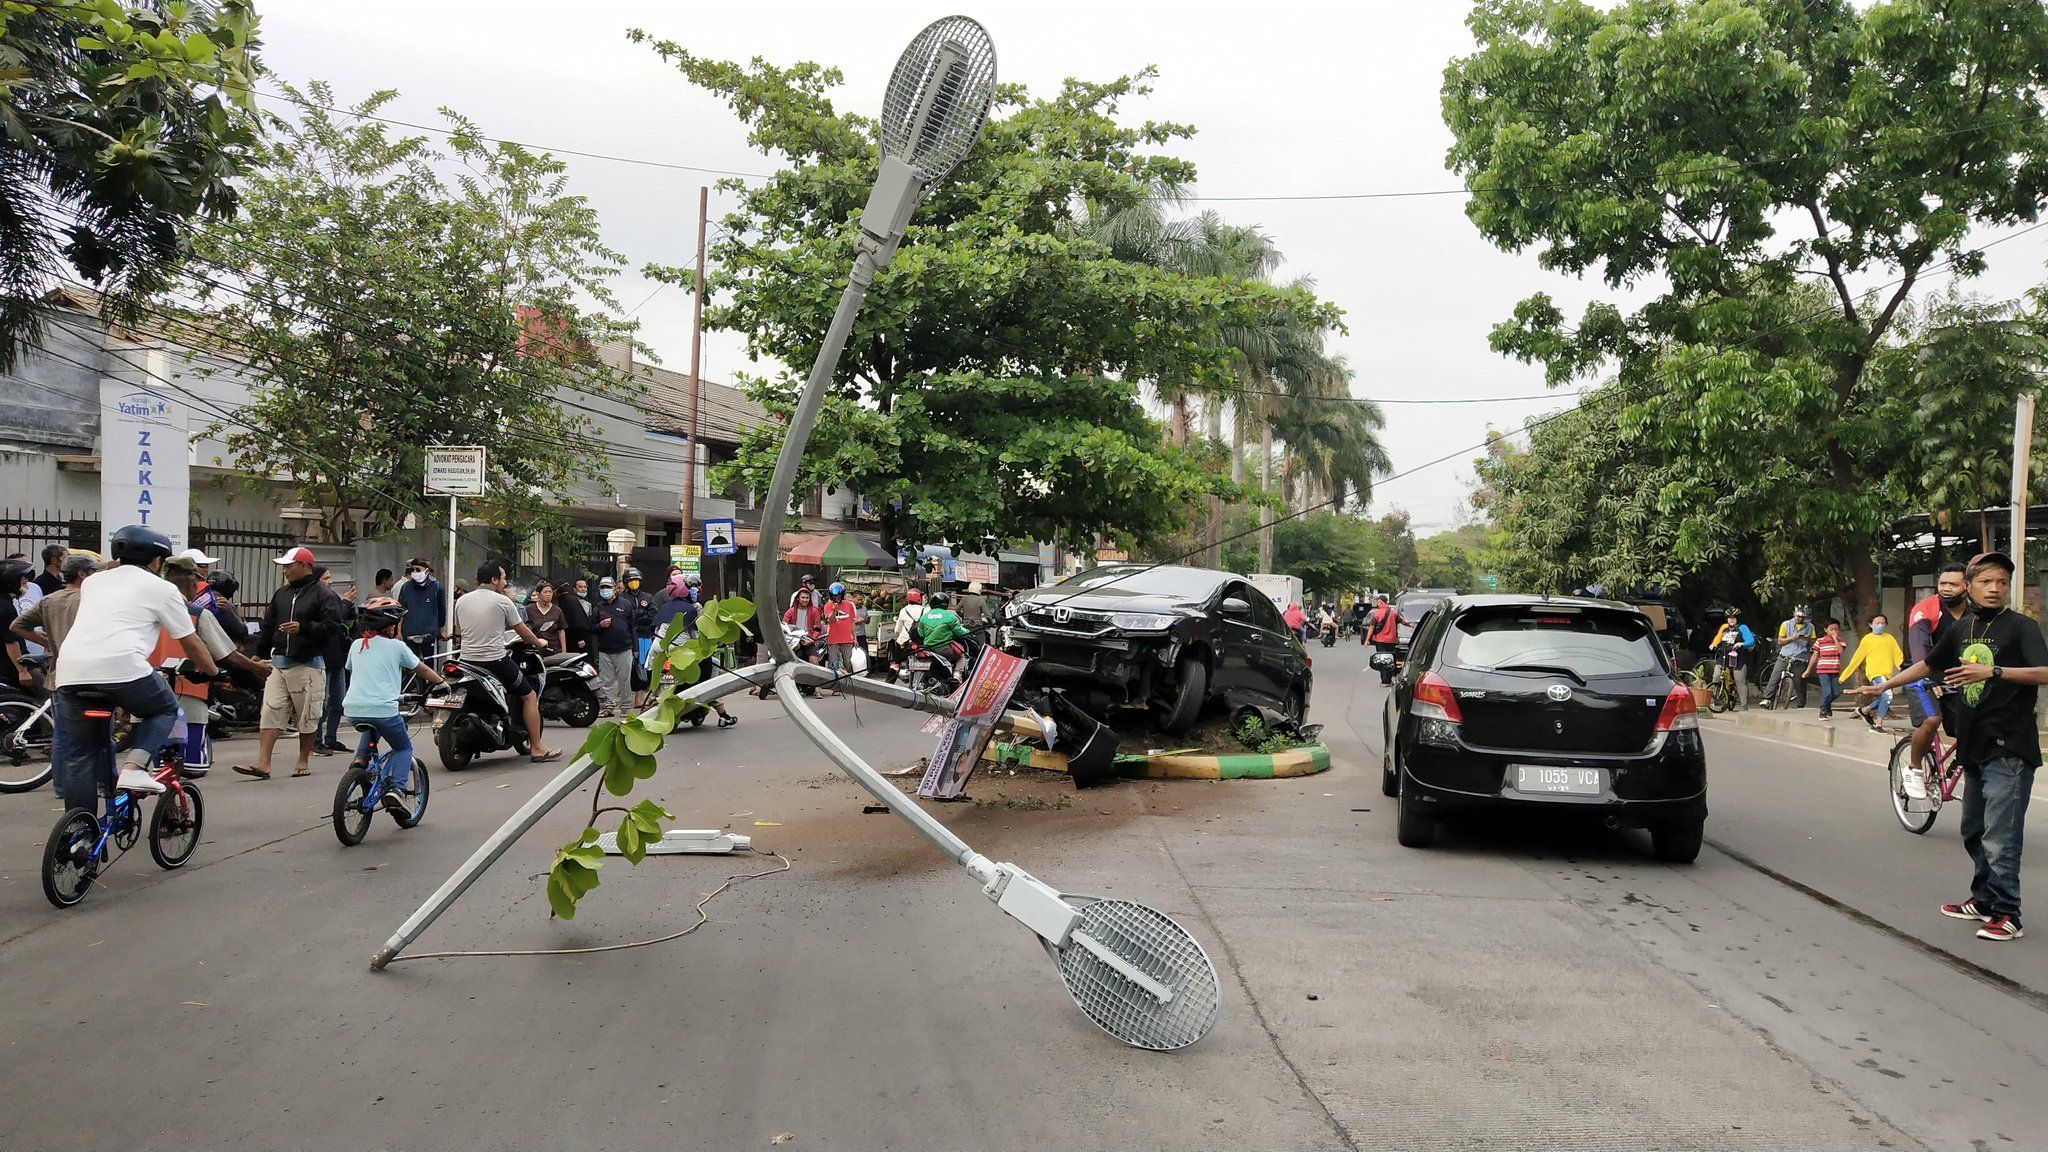 Karena sopir mengantuk, sebuah mobil menabrak pembatas jalan di Jalan Pacuan Kuda, Arcamanik, Kota Bandung. Kecelakaan tunggal tersebut terjadi pada Minggu 27 September 2020, sekira pukul 05.00 WIB.*